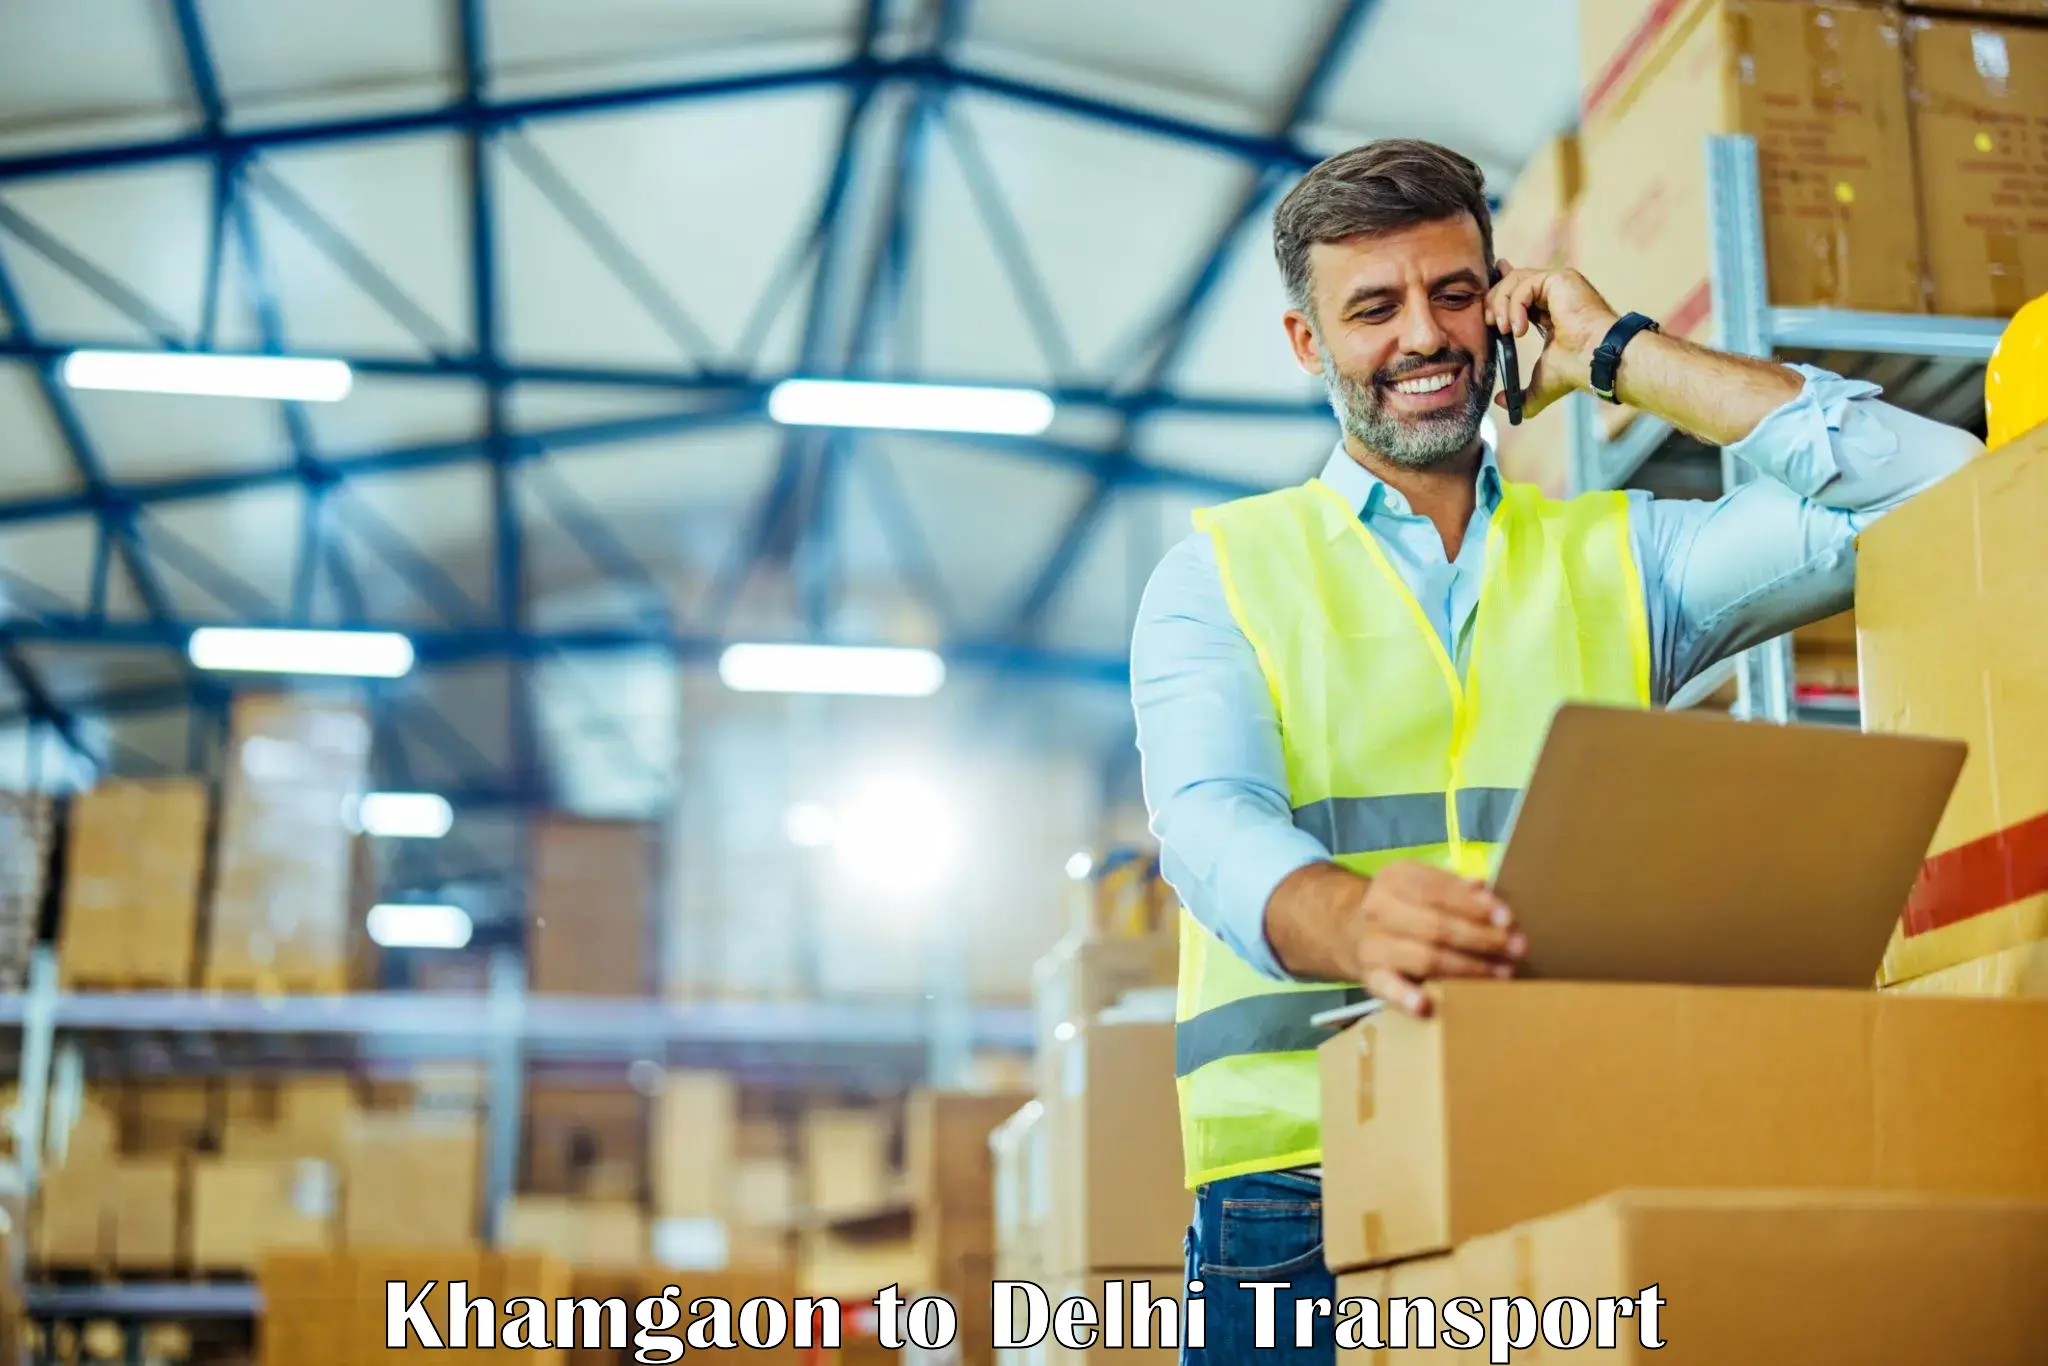 Parcel transport services Khamgaon to Delhi